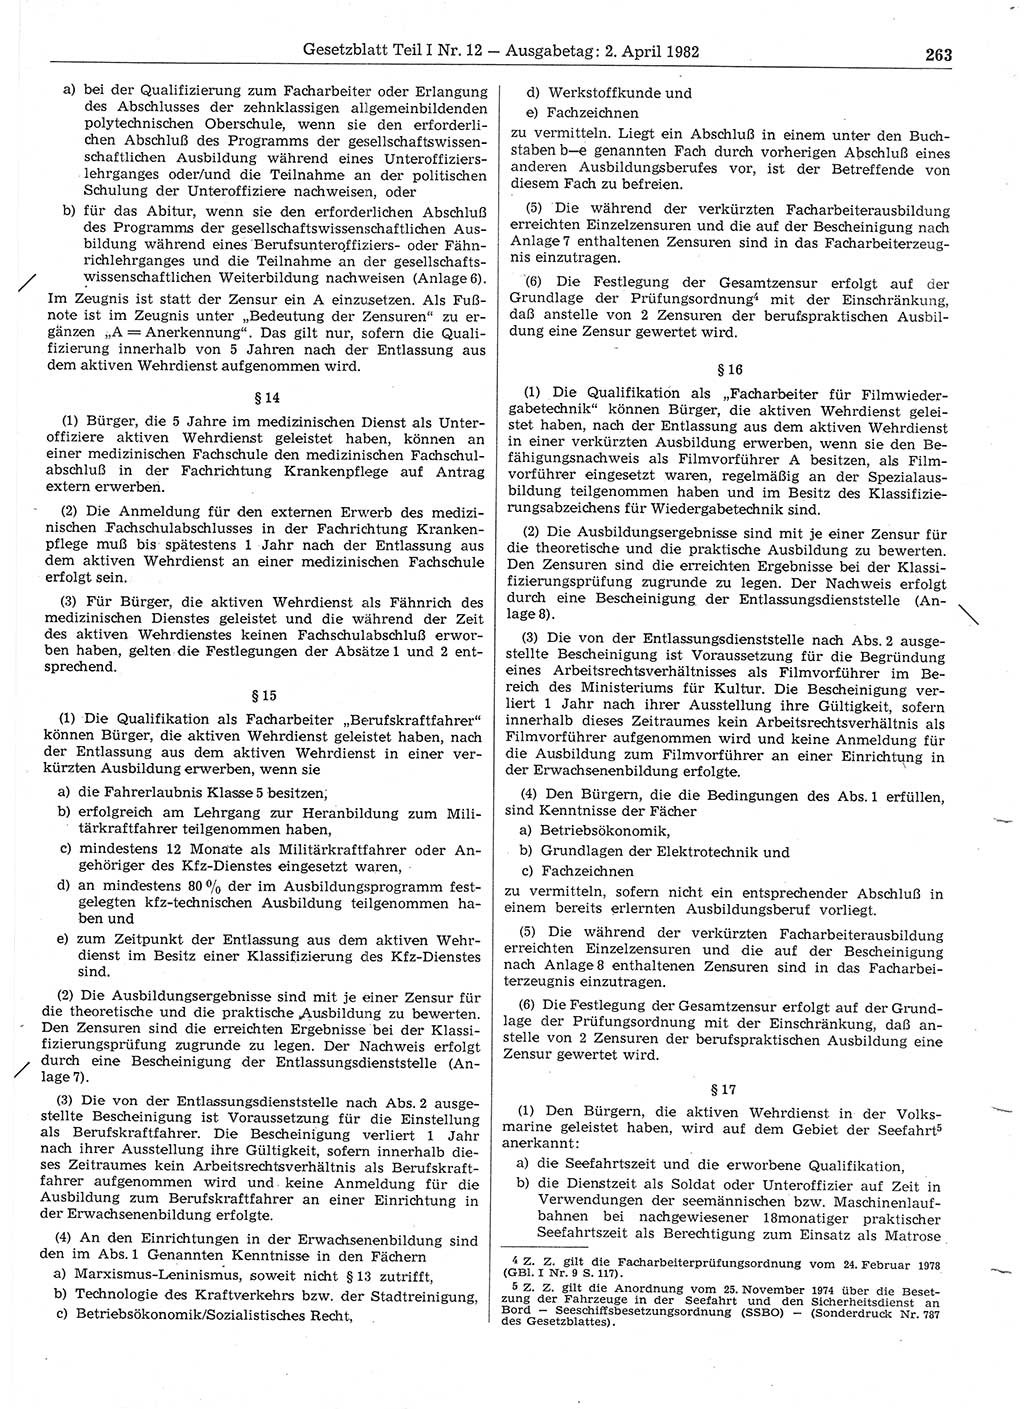 Gesetzblatt (GBl.) der Deutschen Demokratischen Republik (DDR) Teil Ⅰ 1982, Seite 263 (GBl. DDR Ⅰ 1982, S. 263)